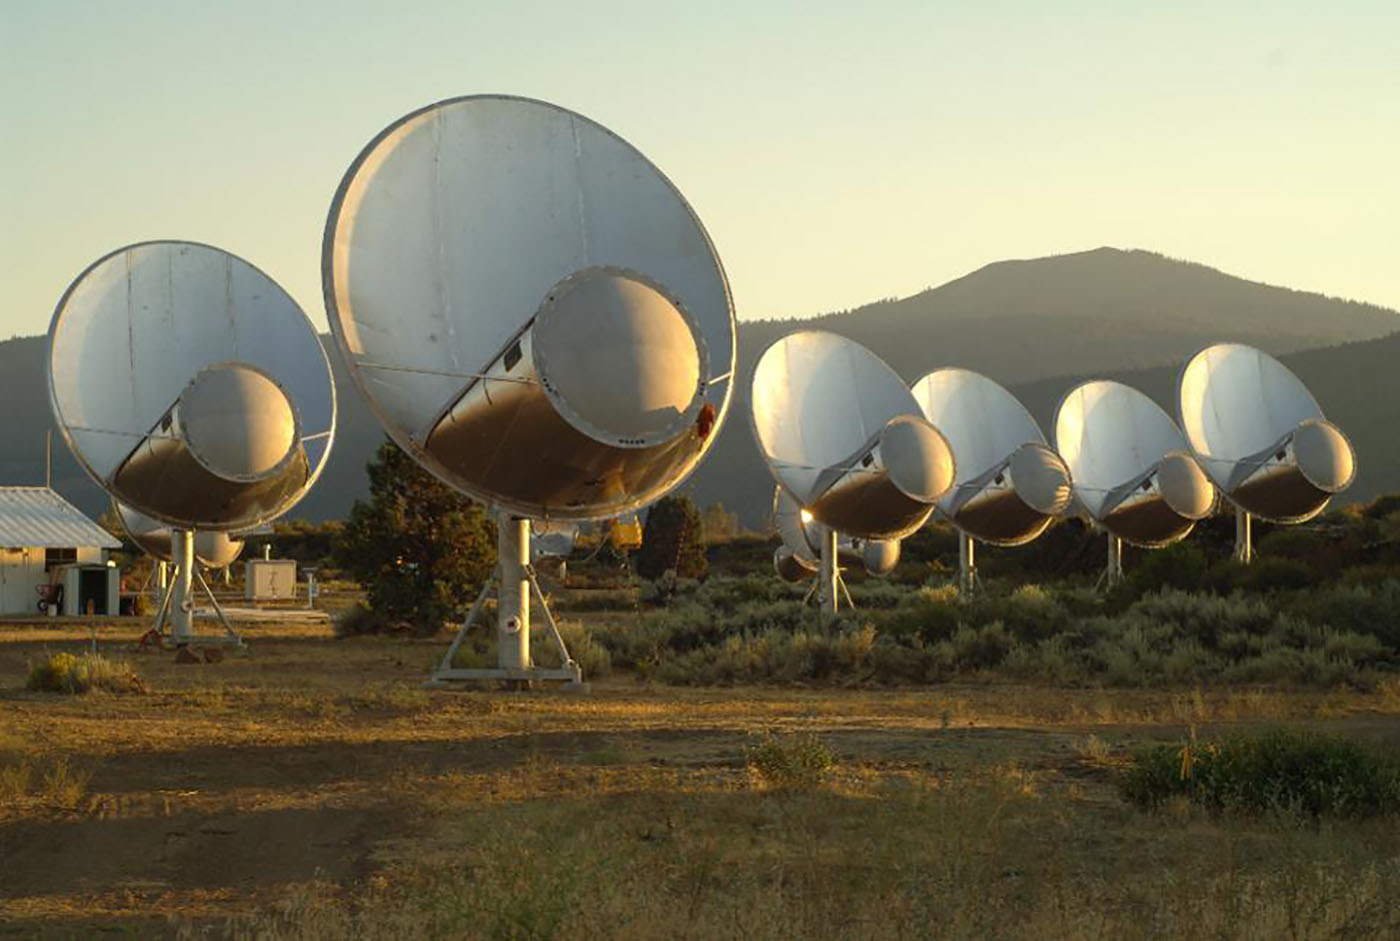 The Allen Telescope Array by Seth Shostak